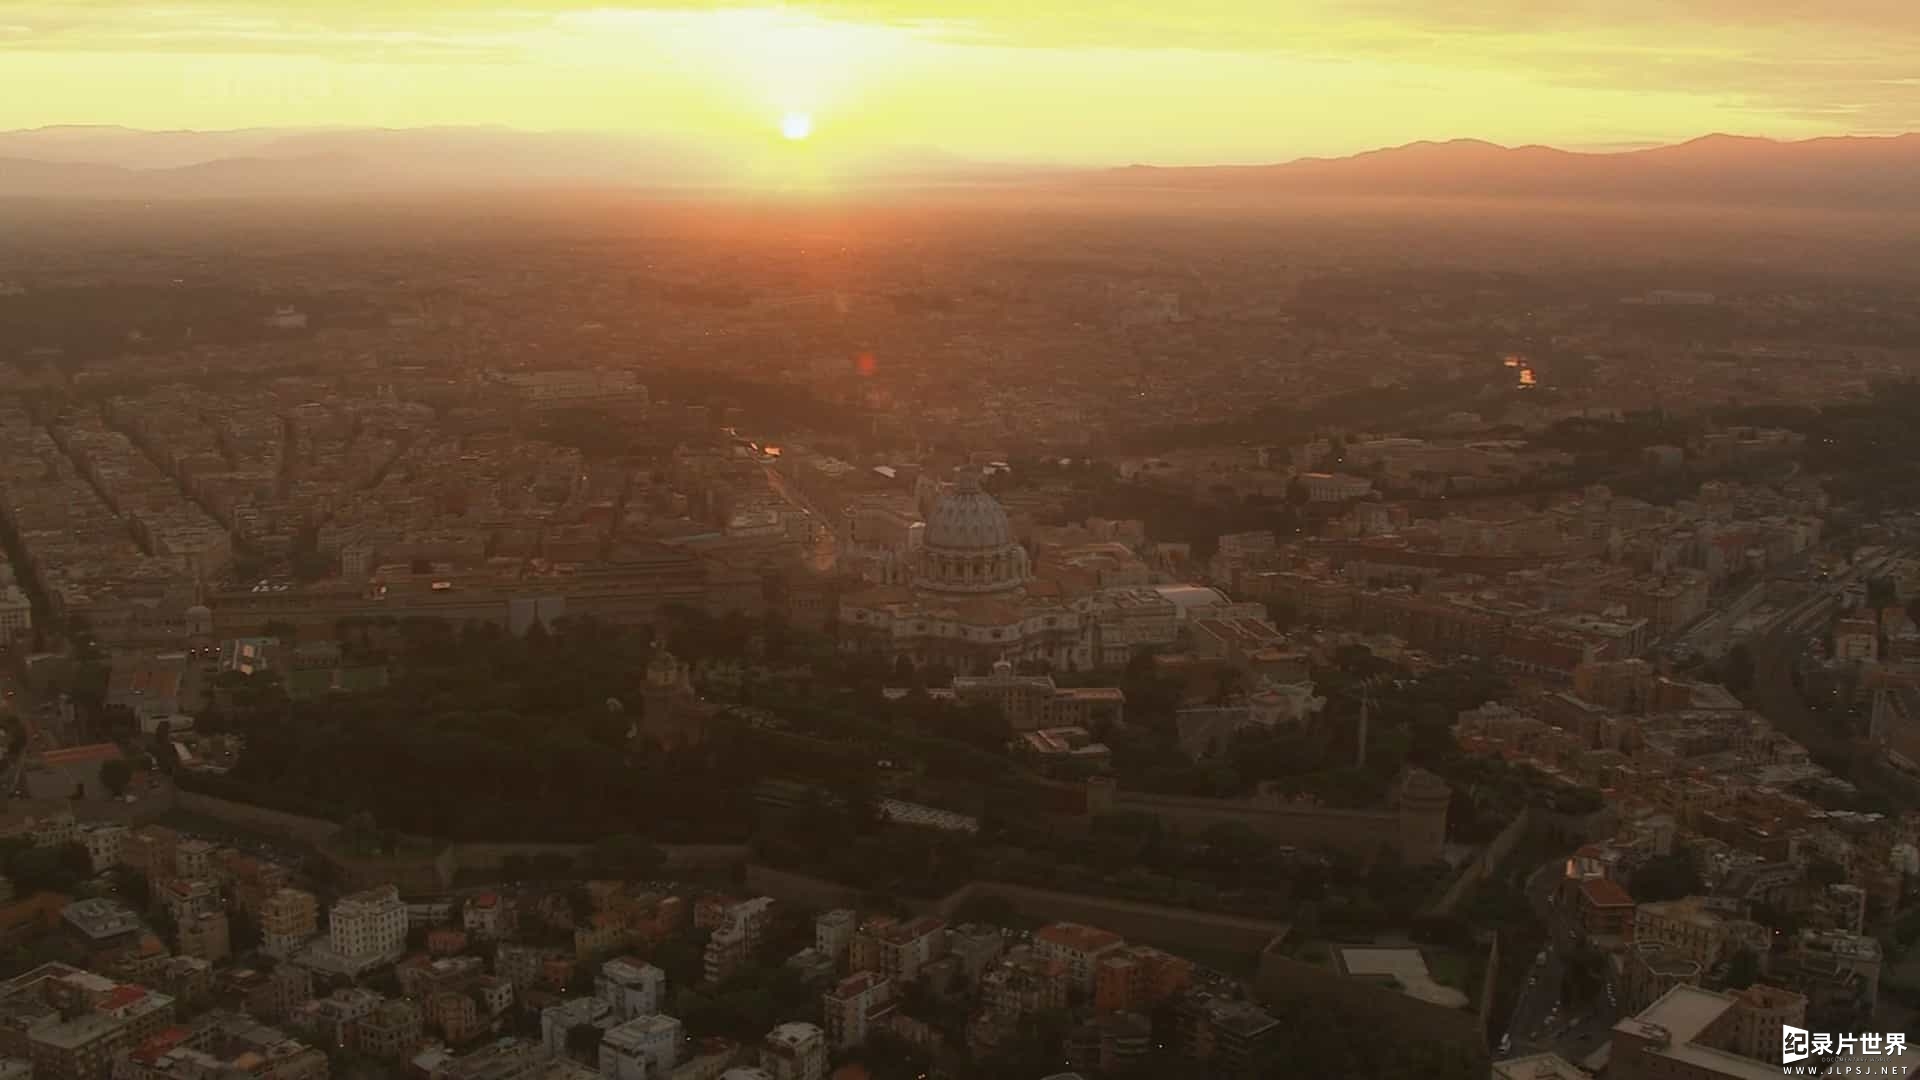 BBC纪录片《梵蒂冈:隐秘的世界 Vatican The Hidden World》全1集